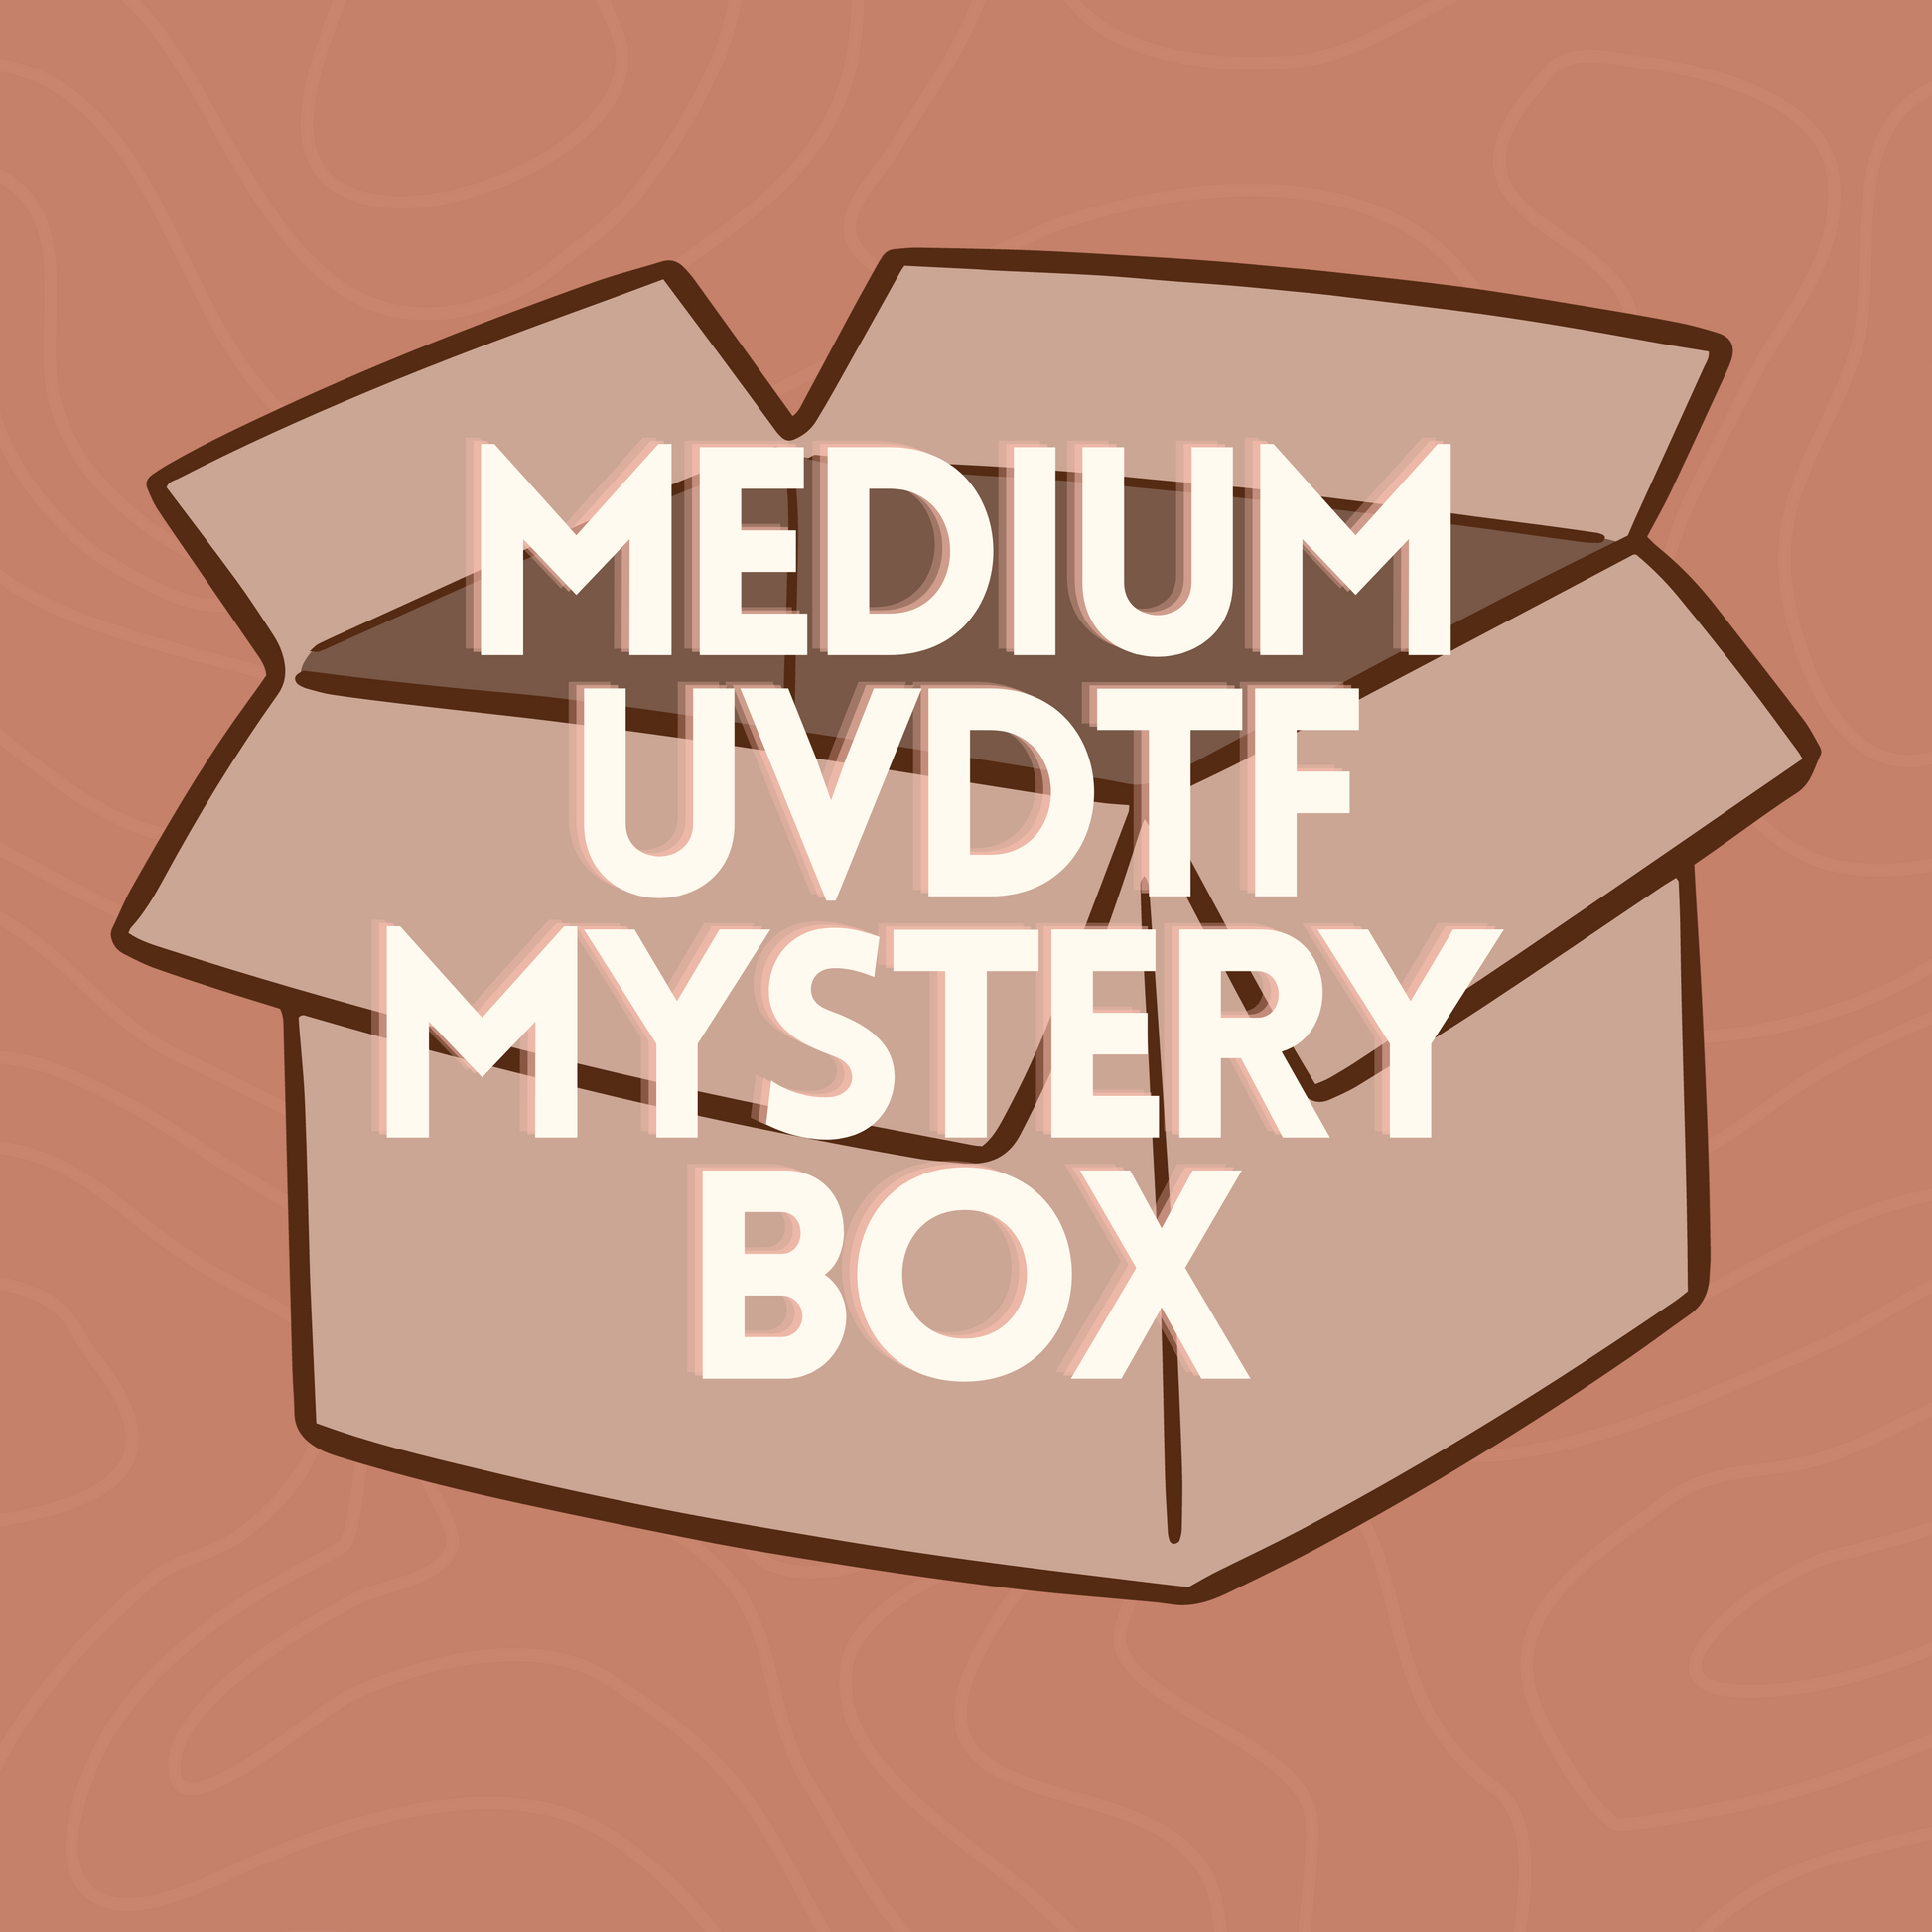 Medium UVDTF Mystery Box – Two Bright Suns